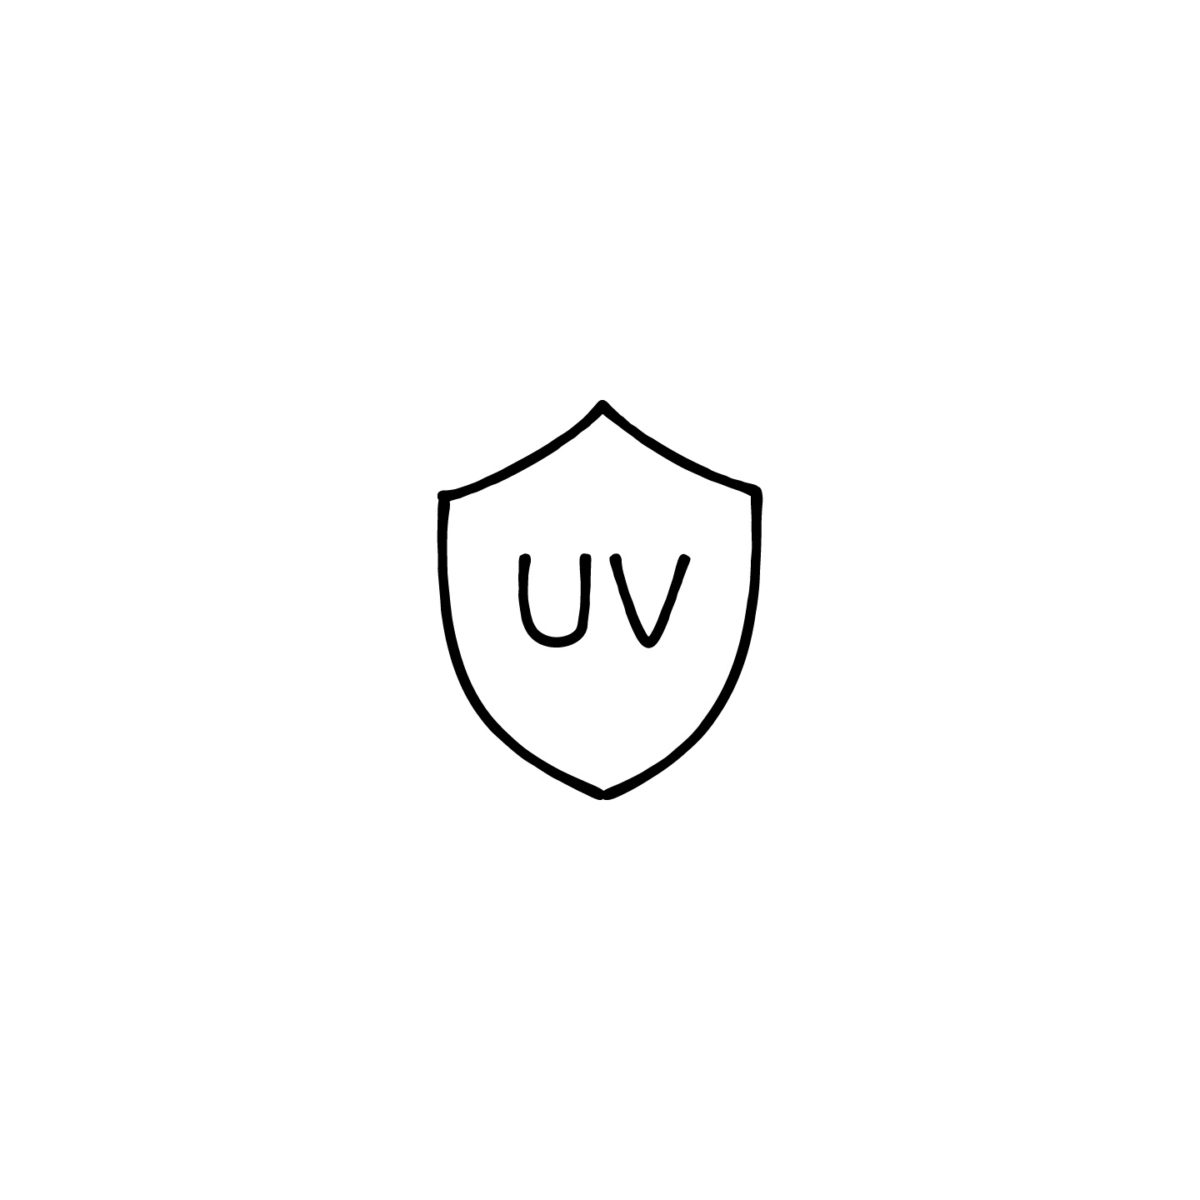 盾とUVの文字のアイコン